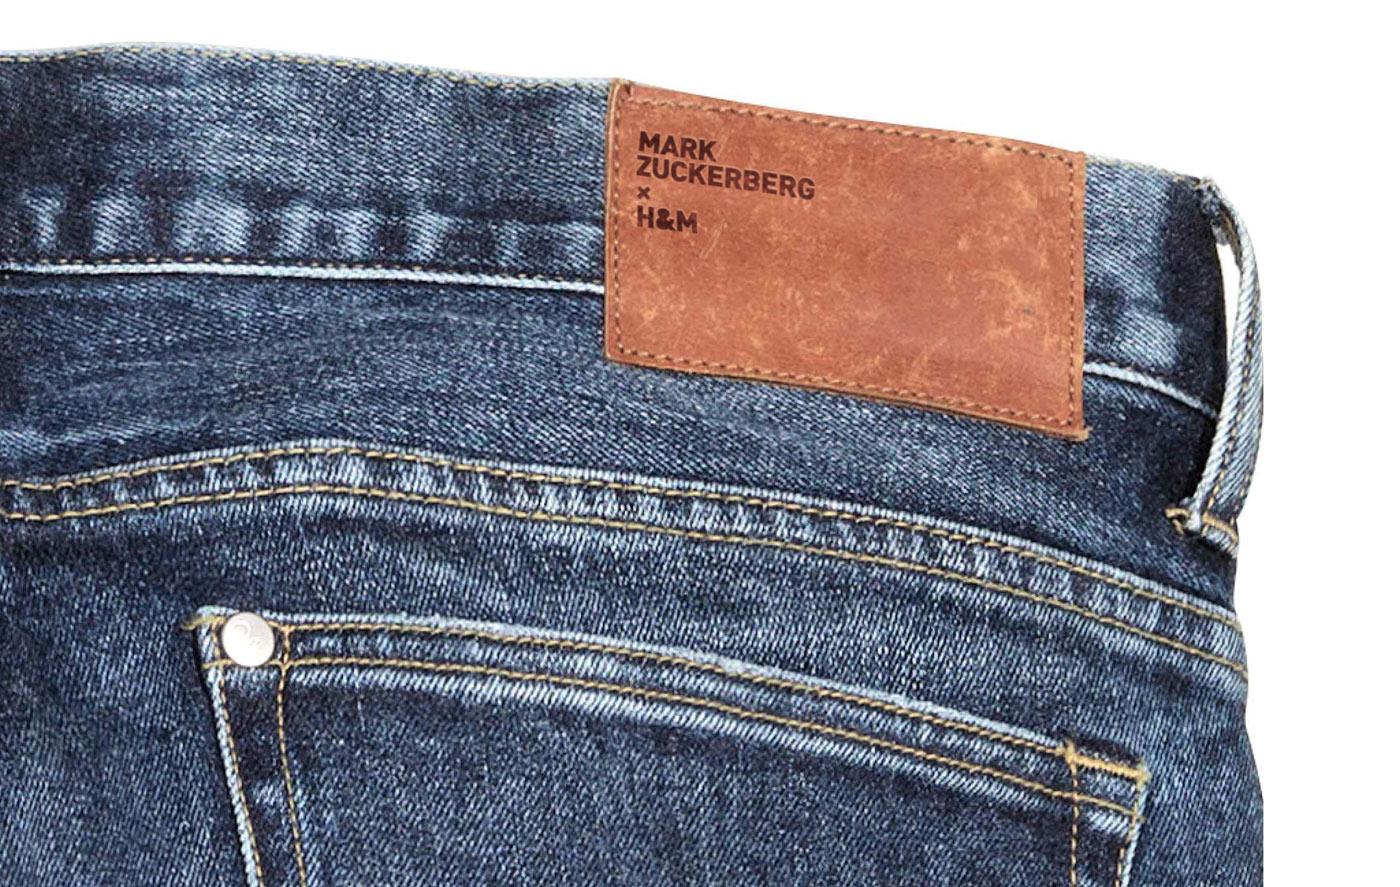 mark zuckerberg per HM jeans